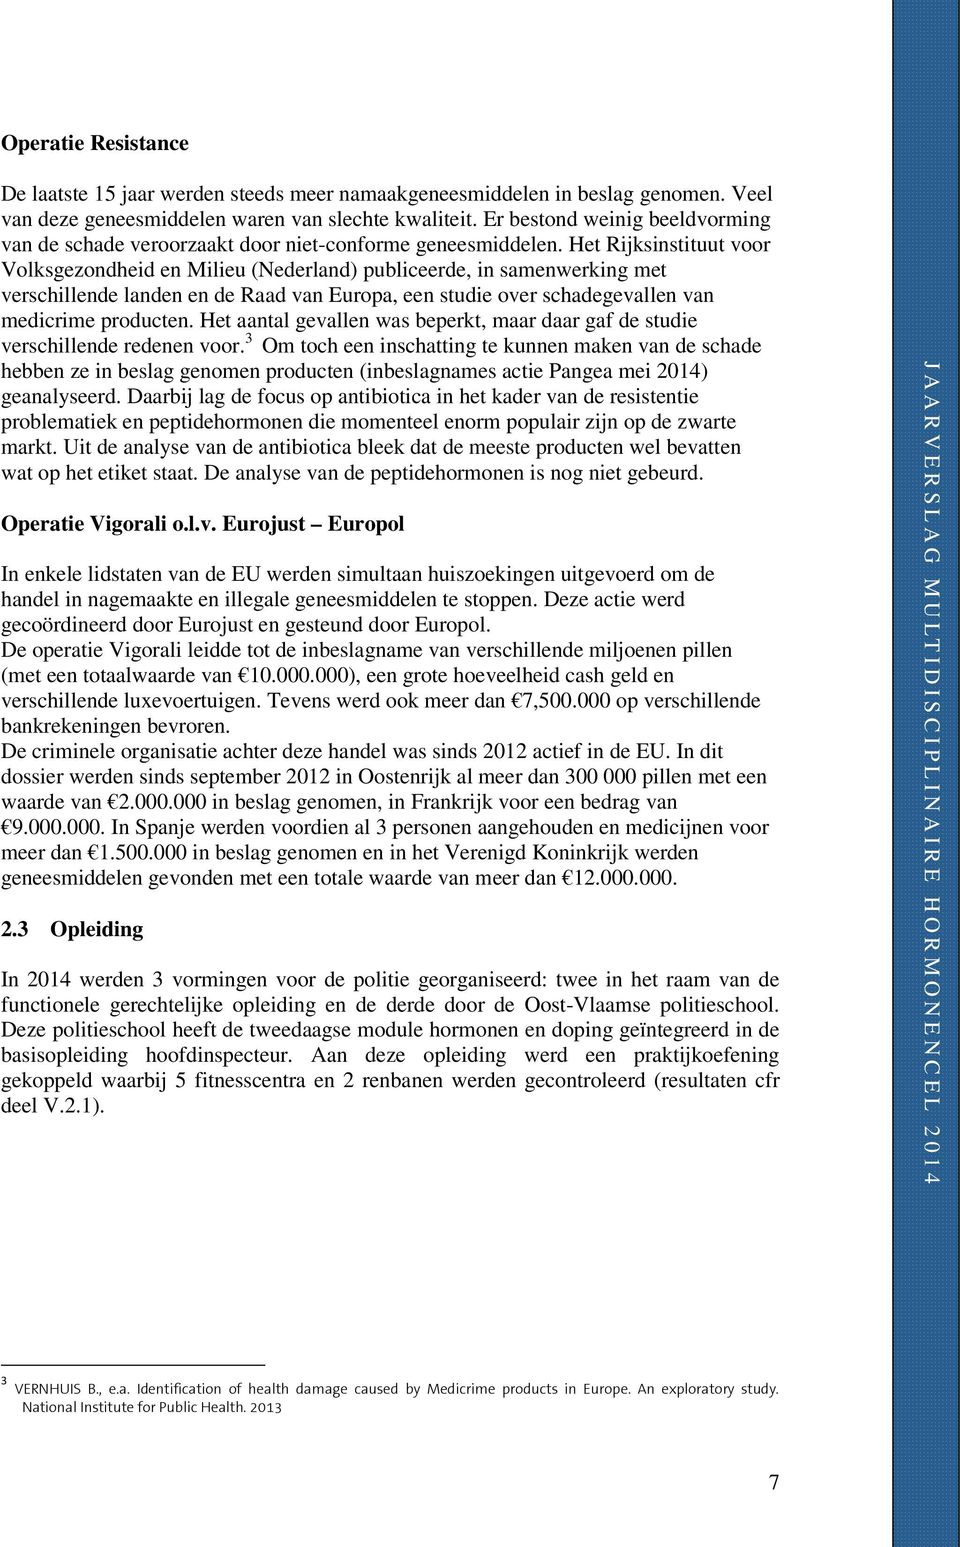 Het Rijksinstituut voor Volksgezondheid en Milieu (Nederland) publiceerde, in samenwerking met verschillende landen en de Raad van Europa, een studie over schadegevallen van medicrime producten.